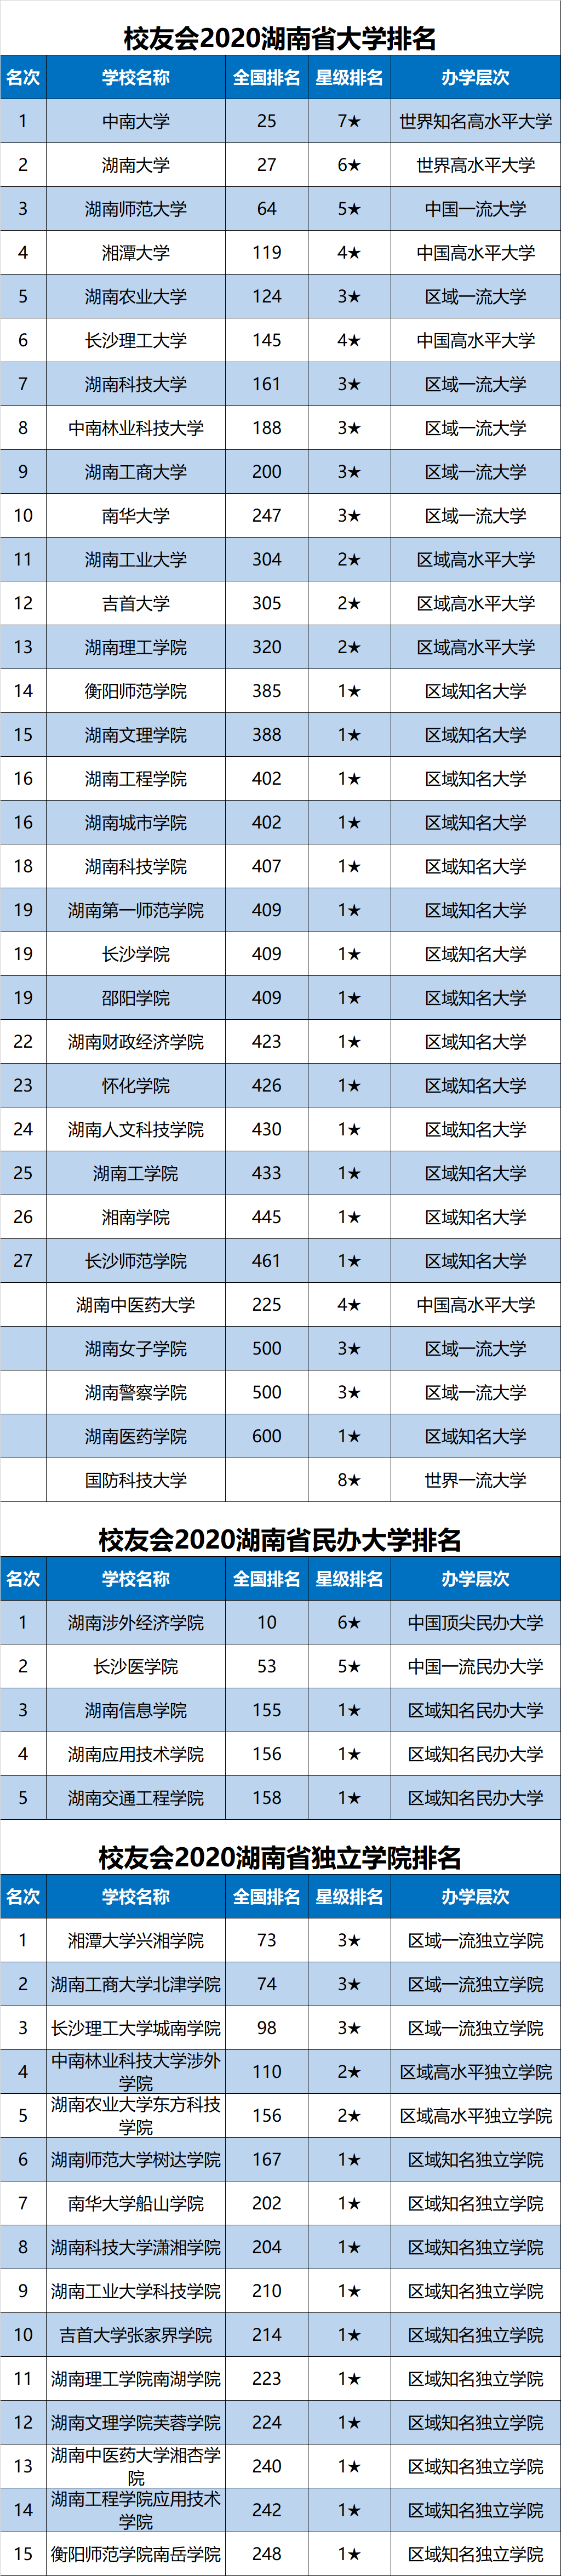 湖南各大学排名2020_2020中国区域特色研究型大学排名,湖南师范大学第